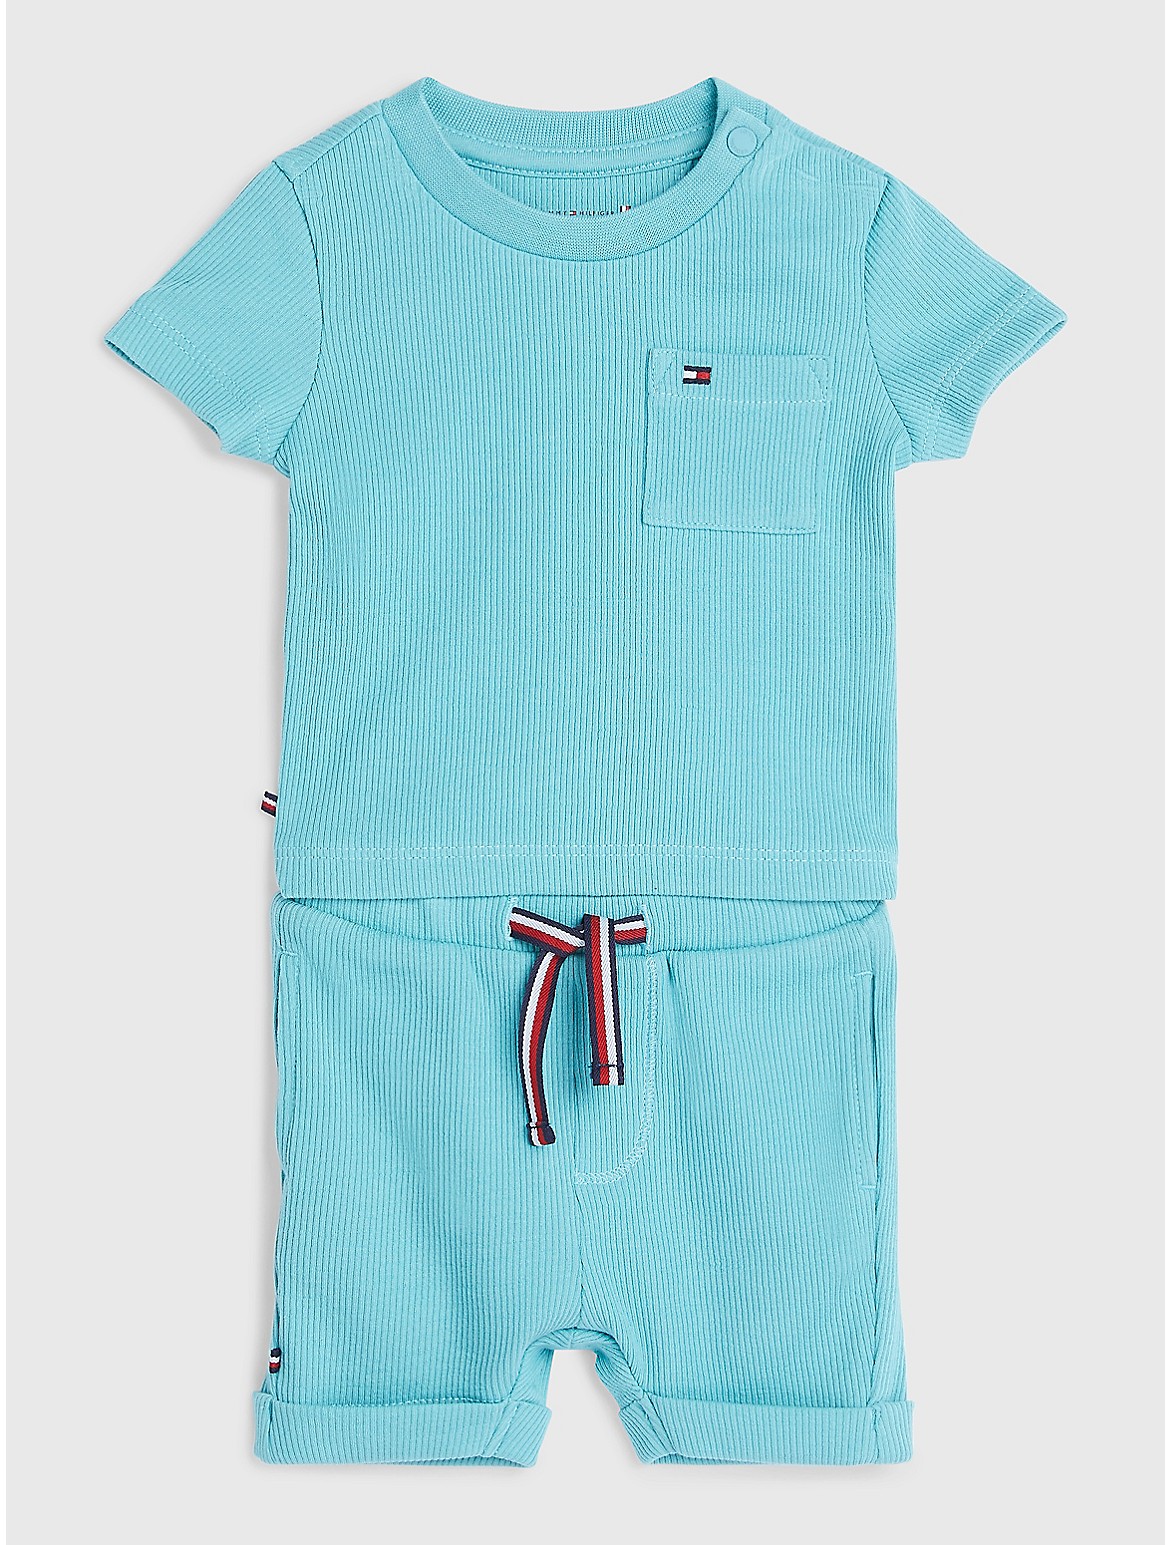 Tommy Hilfiger Babies' Logo T-Shirt and Short Set - Blue - NEWBORN